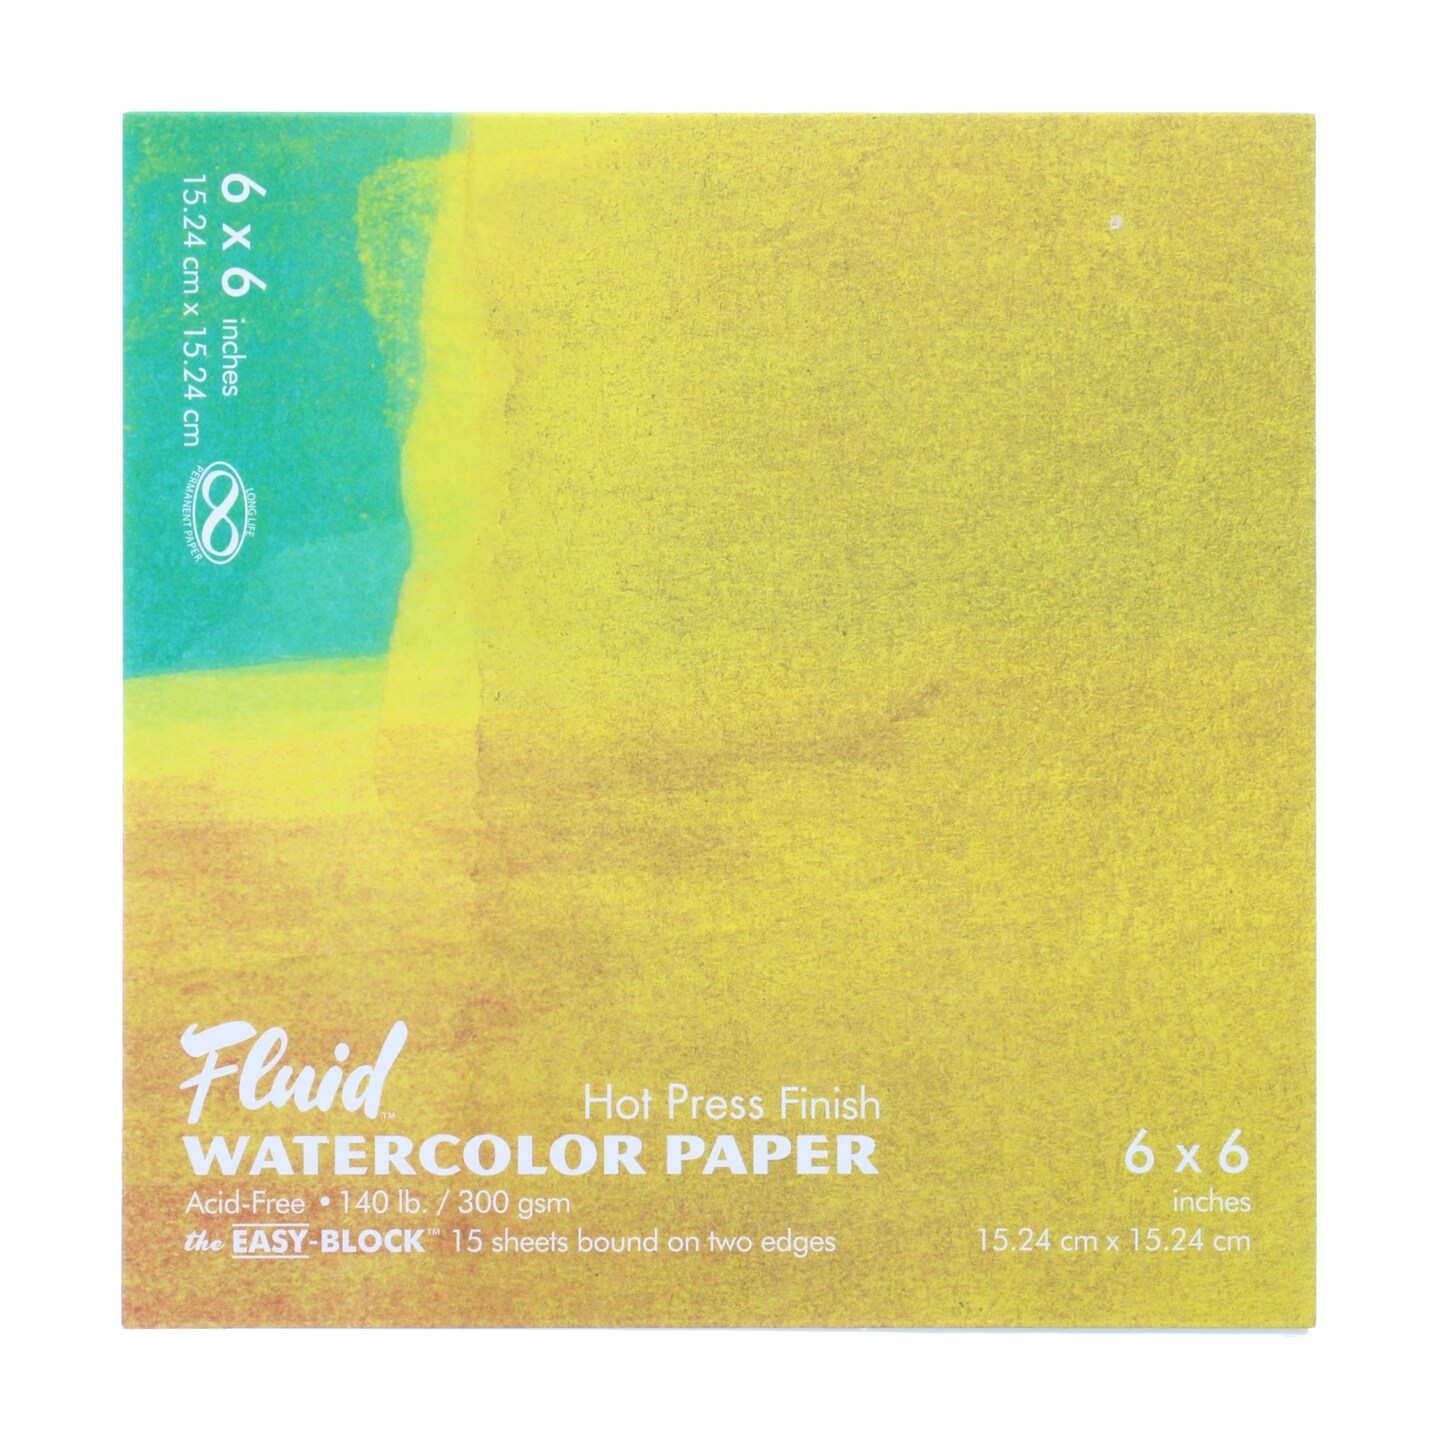 Fluid Watercolor Hot Press 140 lb Easy-Block